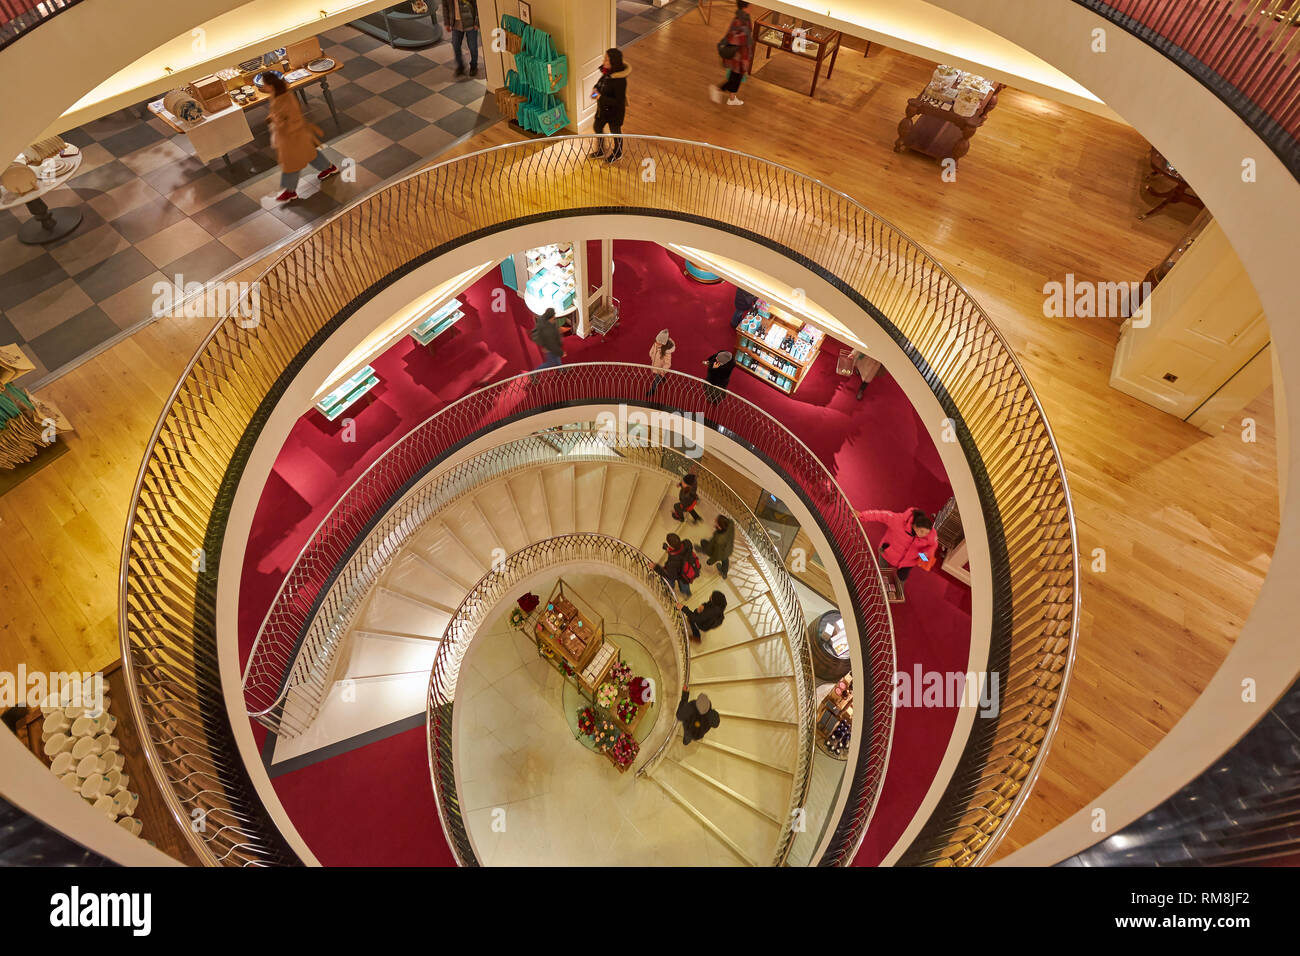 Londra PICCADILLY FORTNUM E MASON interni la scalinata a spirale per tutti i piani e le persone sulle scale Foto Stock